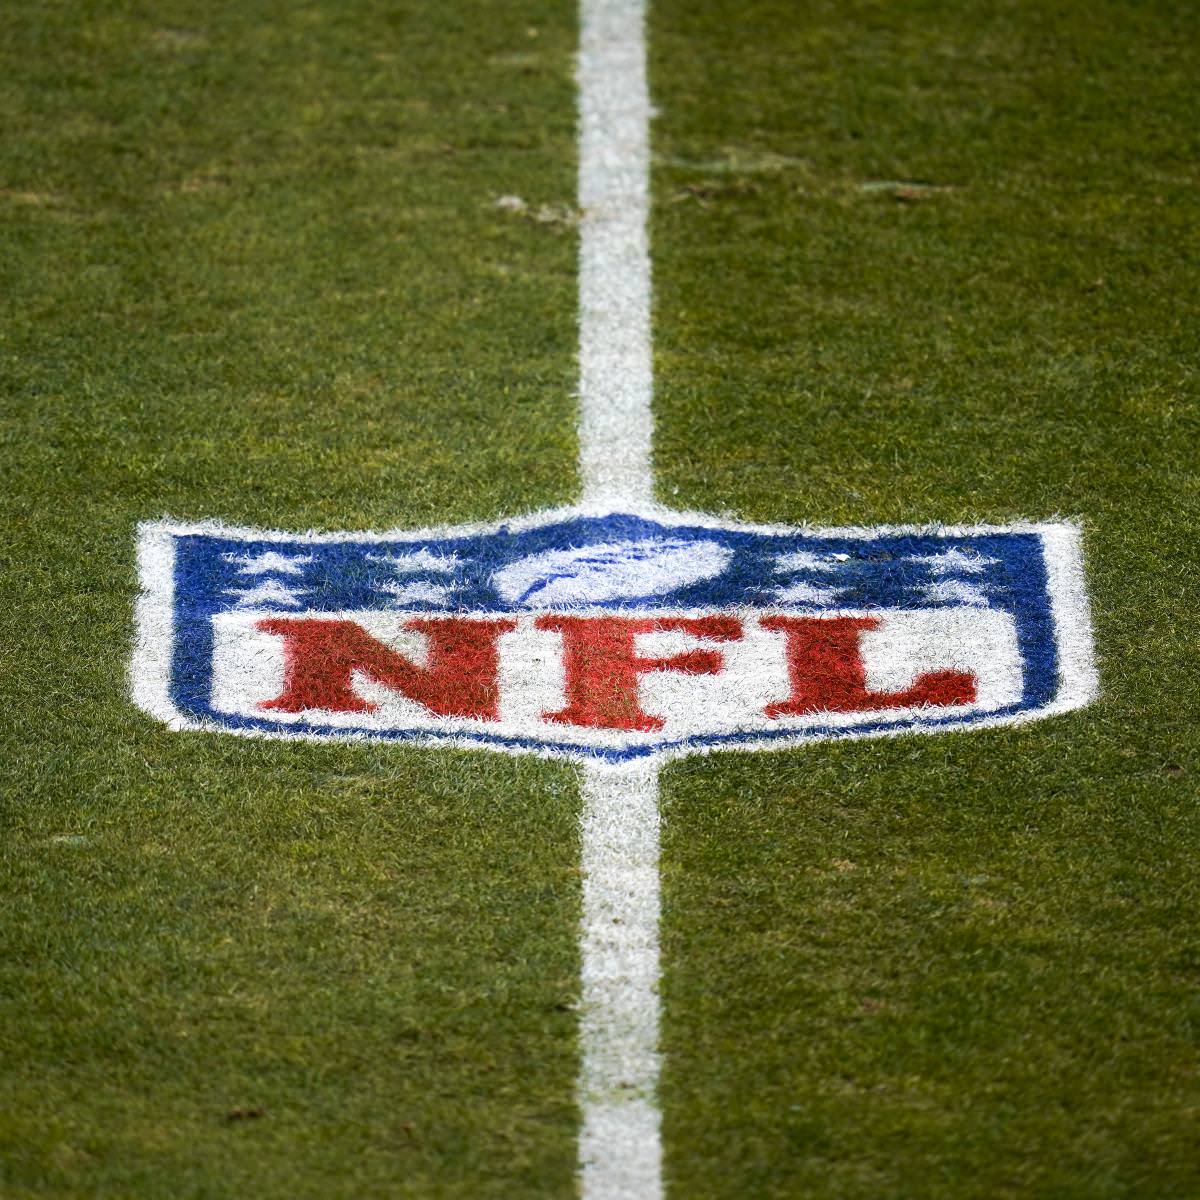 Limite salarial da NFL para 2021 supostamente não deve exceder US $ 183 milhões